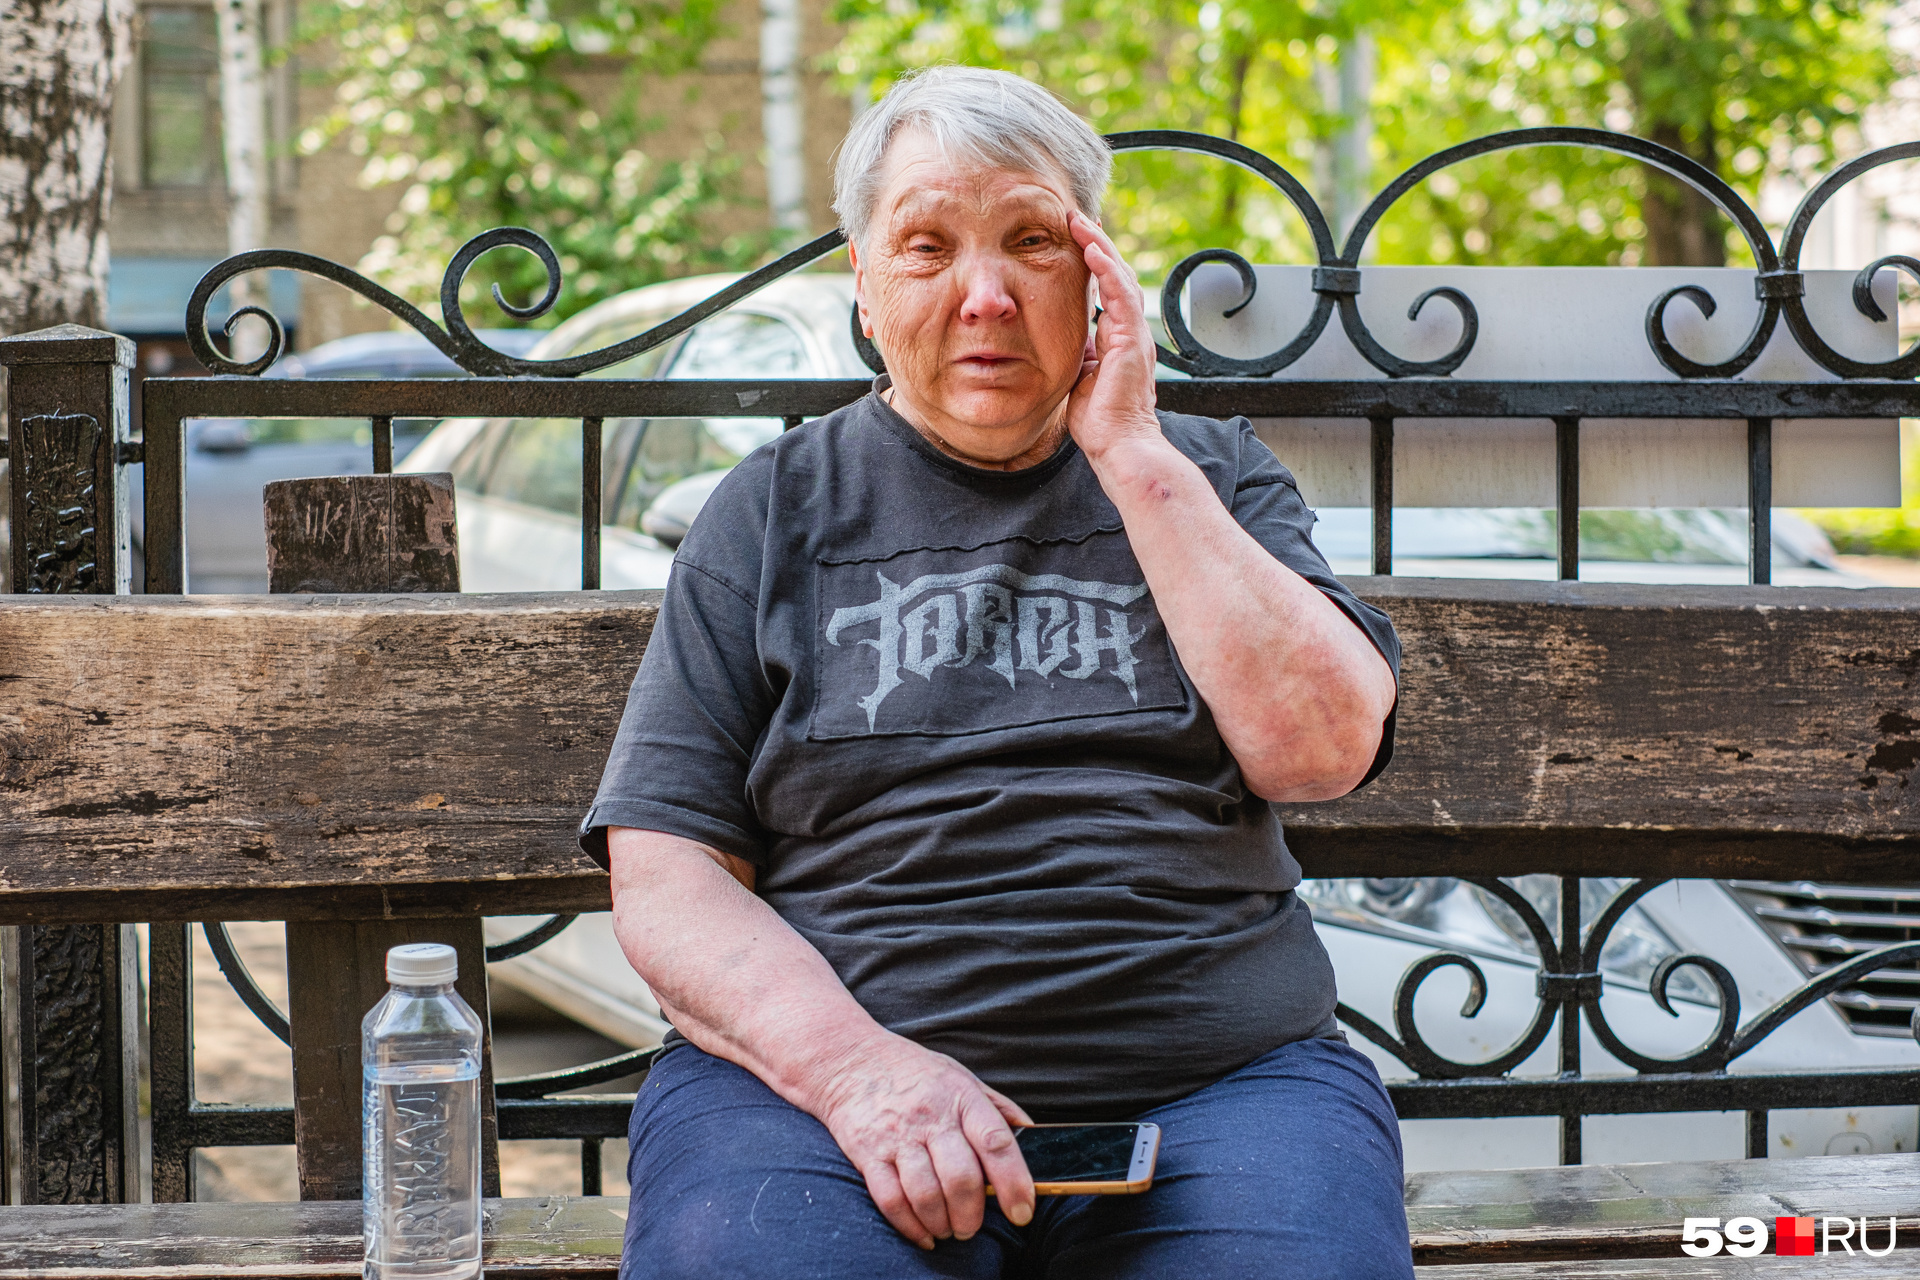 Бабушка Вера Петровна плачет. Из соседнего кафе ей принесли воду, а позже подарили еще мороженое